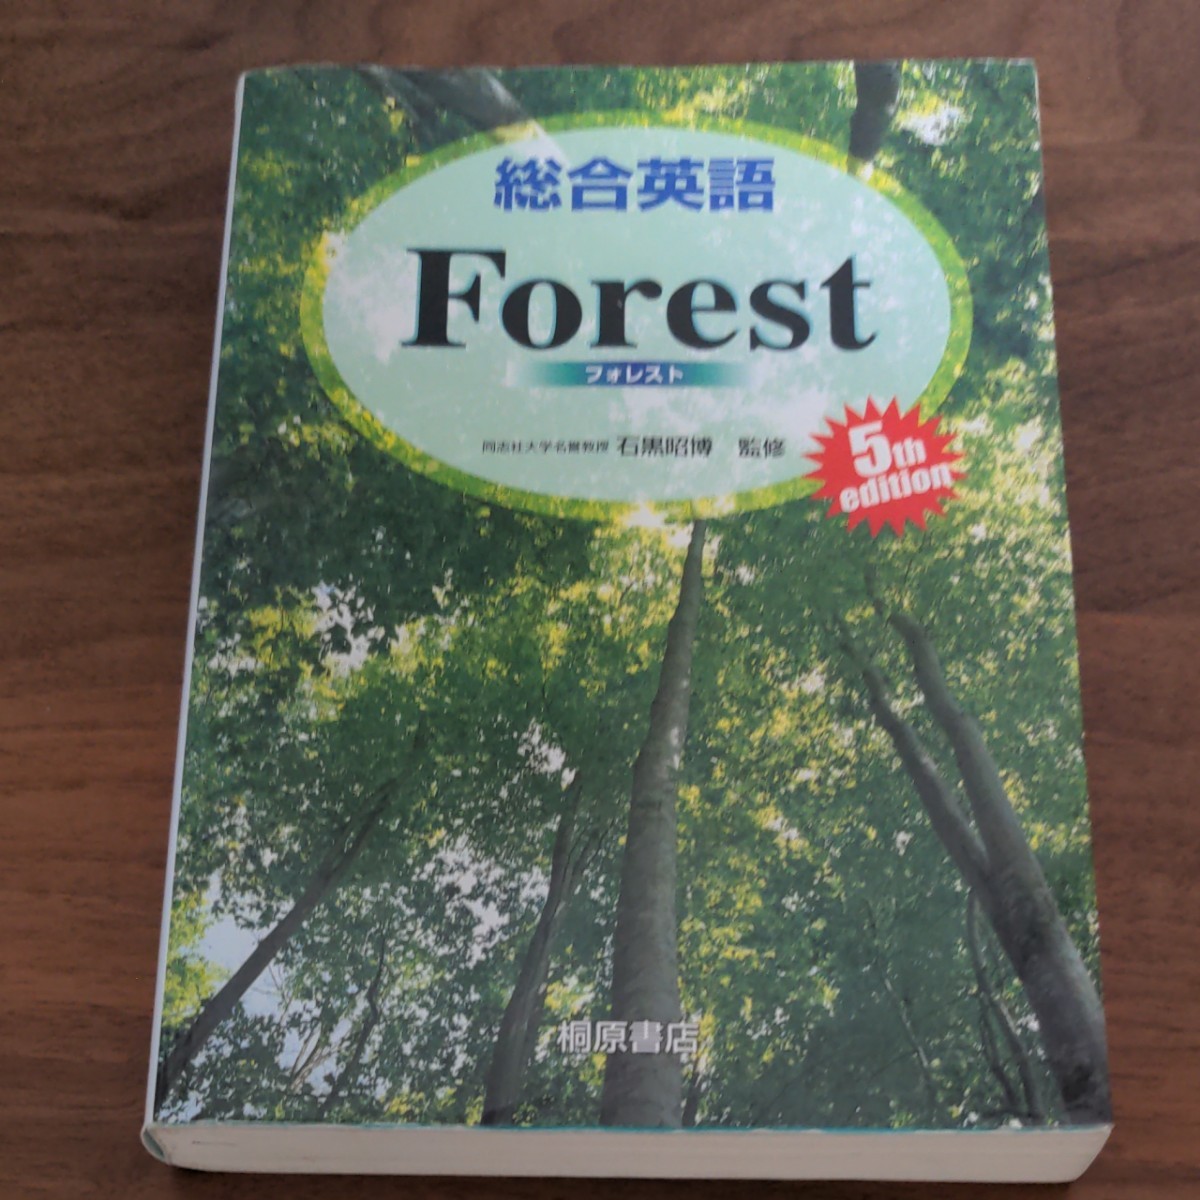 総合英語フォレスト forest